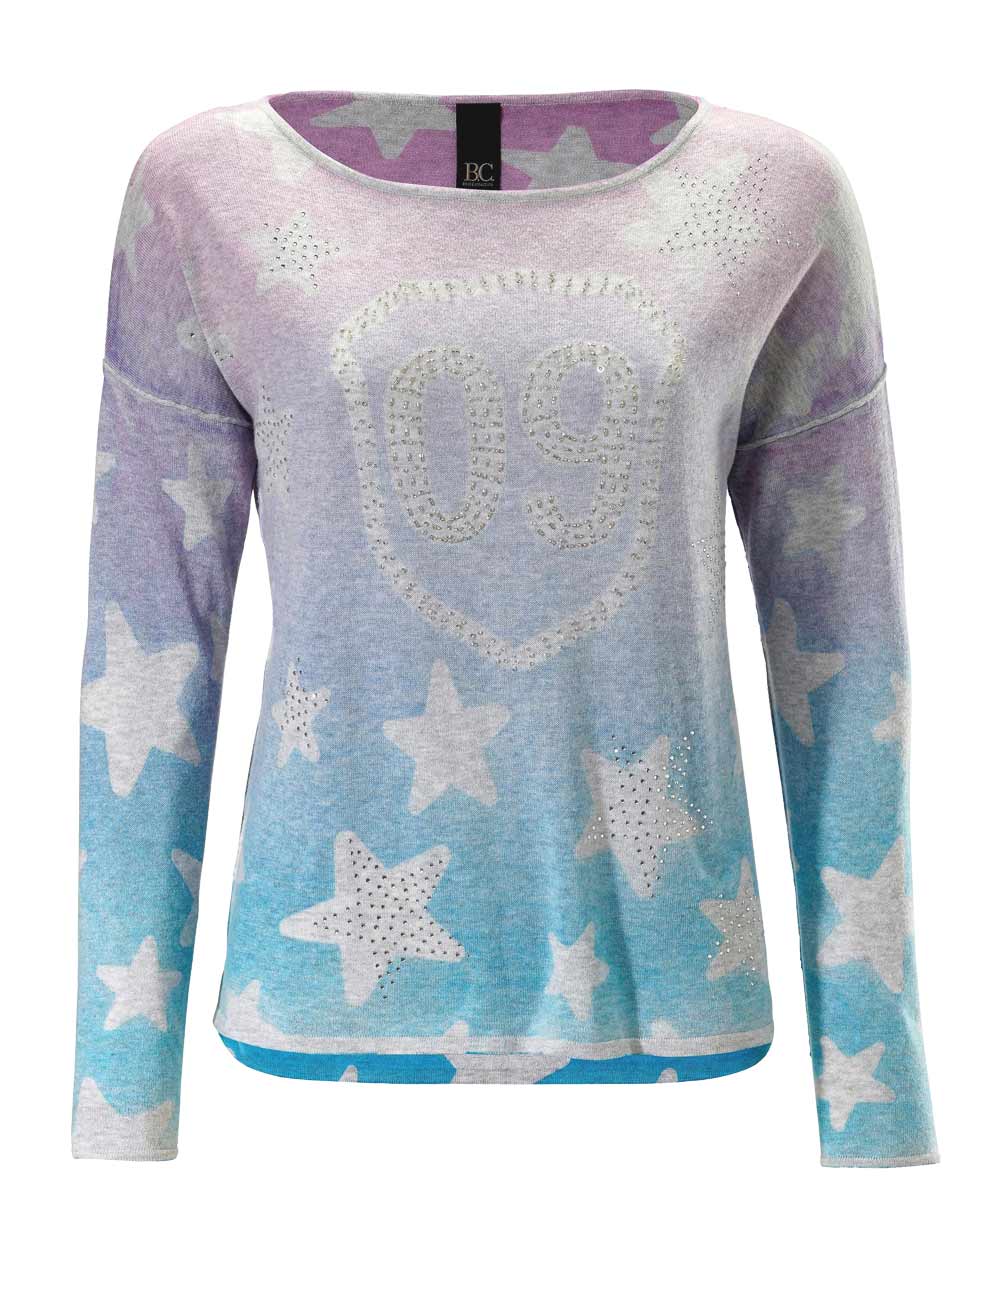 Damen Pullover für den Winter Feinstrickpullover warm pink blau von Heine Missforty